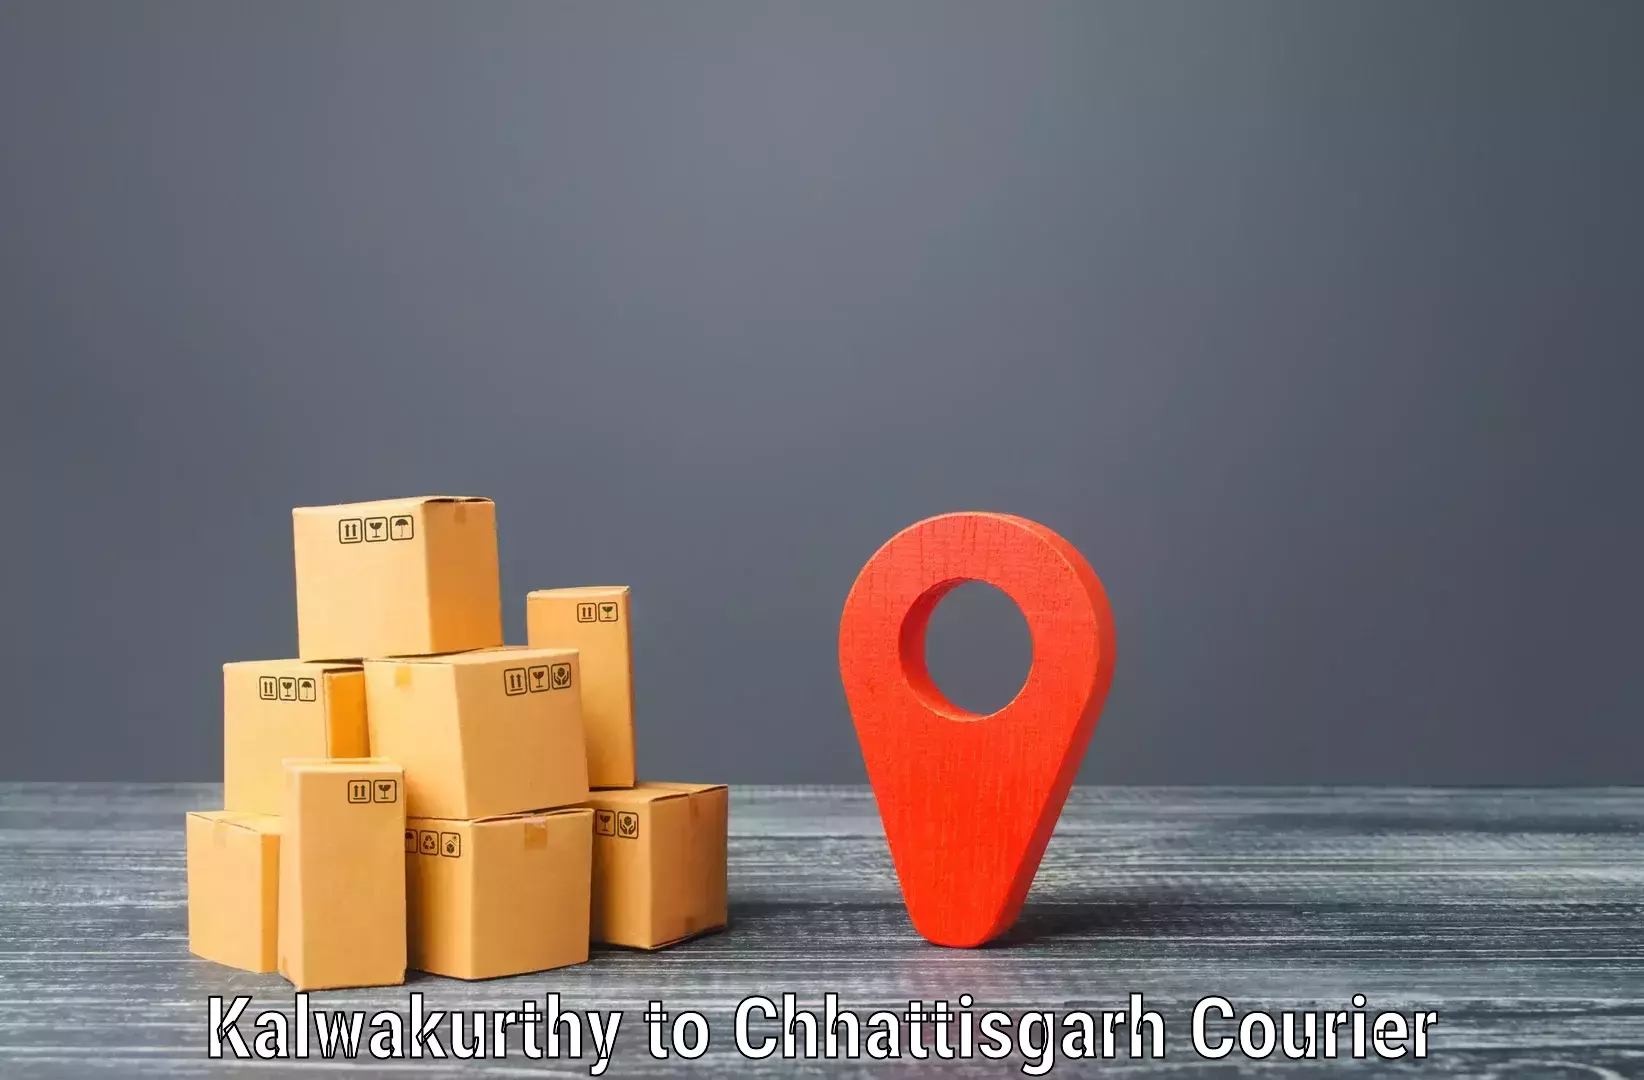 Seamless shipping experience Kalwakurthy to Chhattisgarh